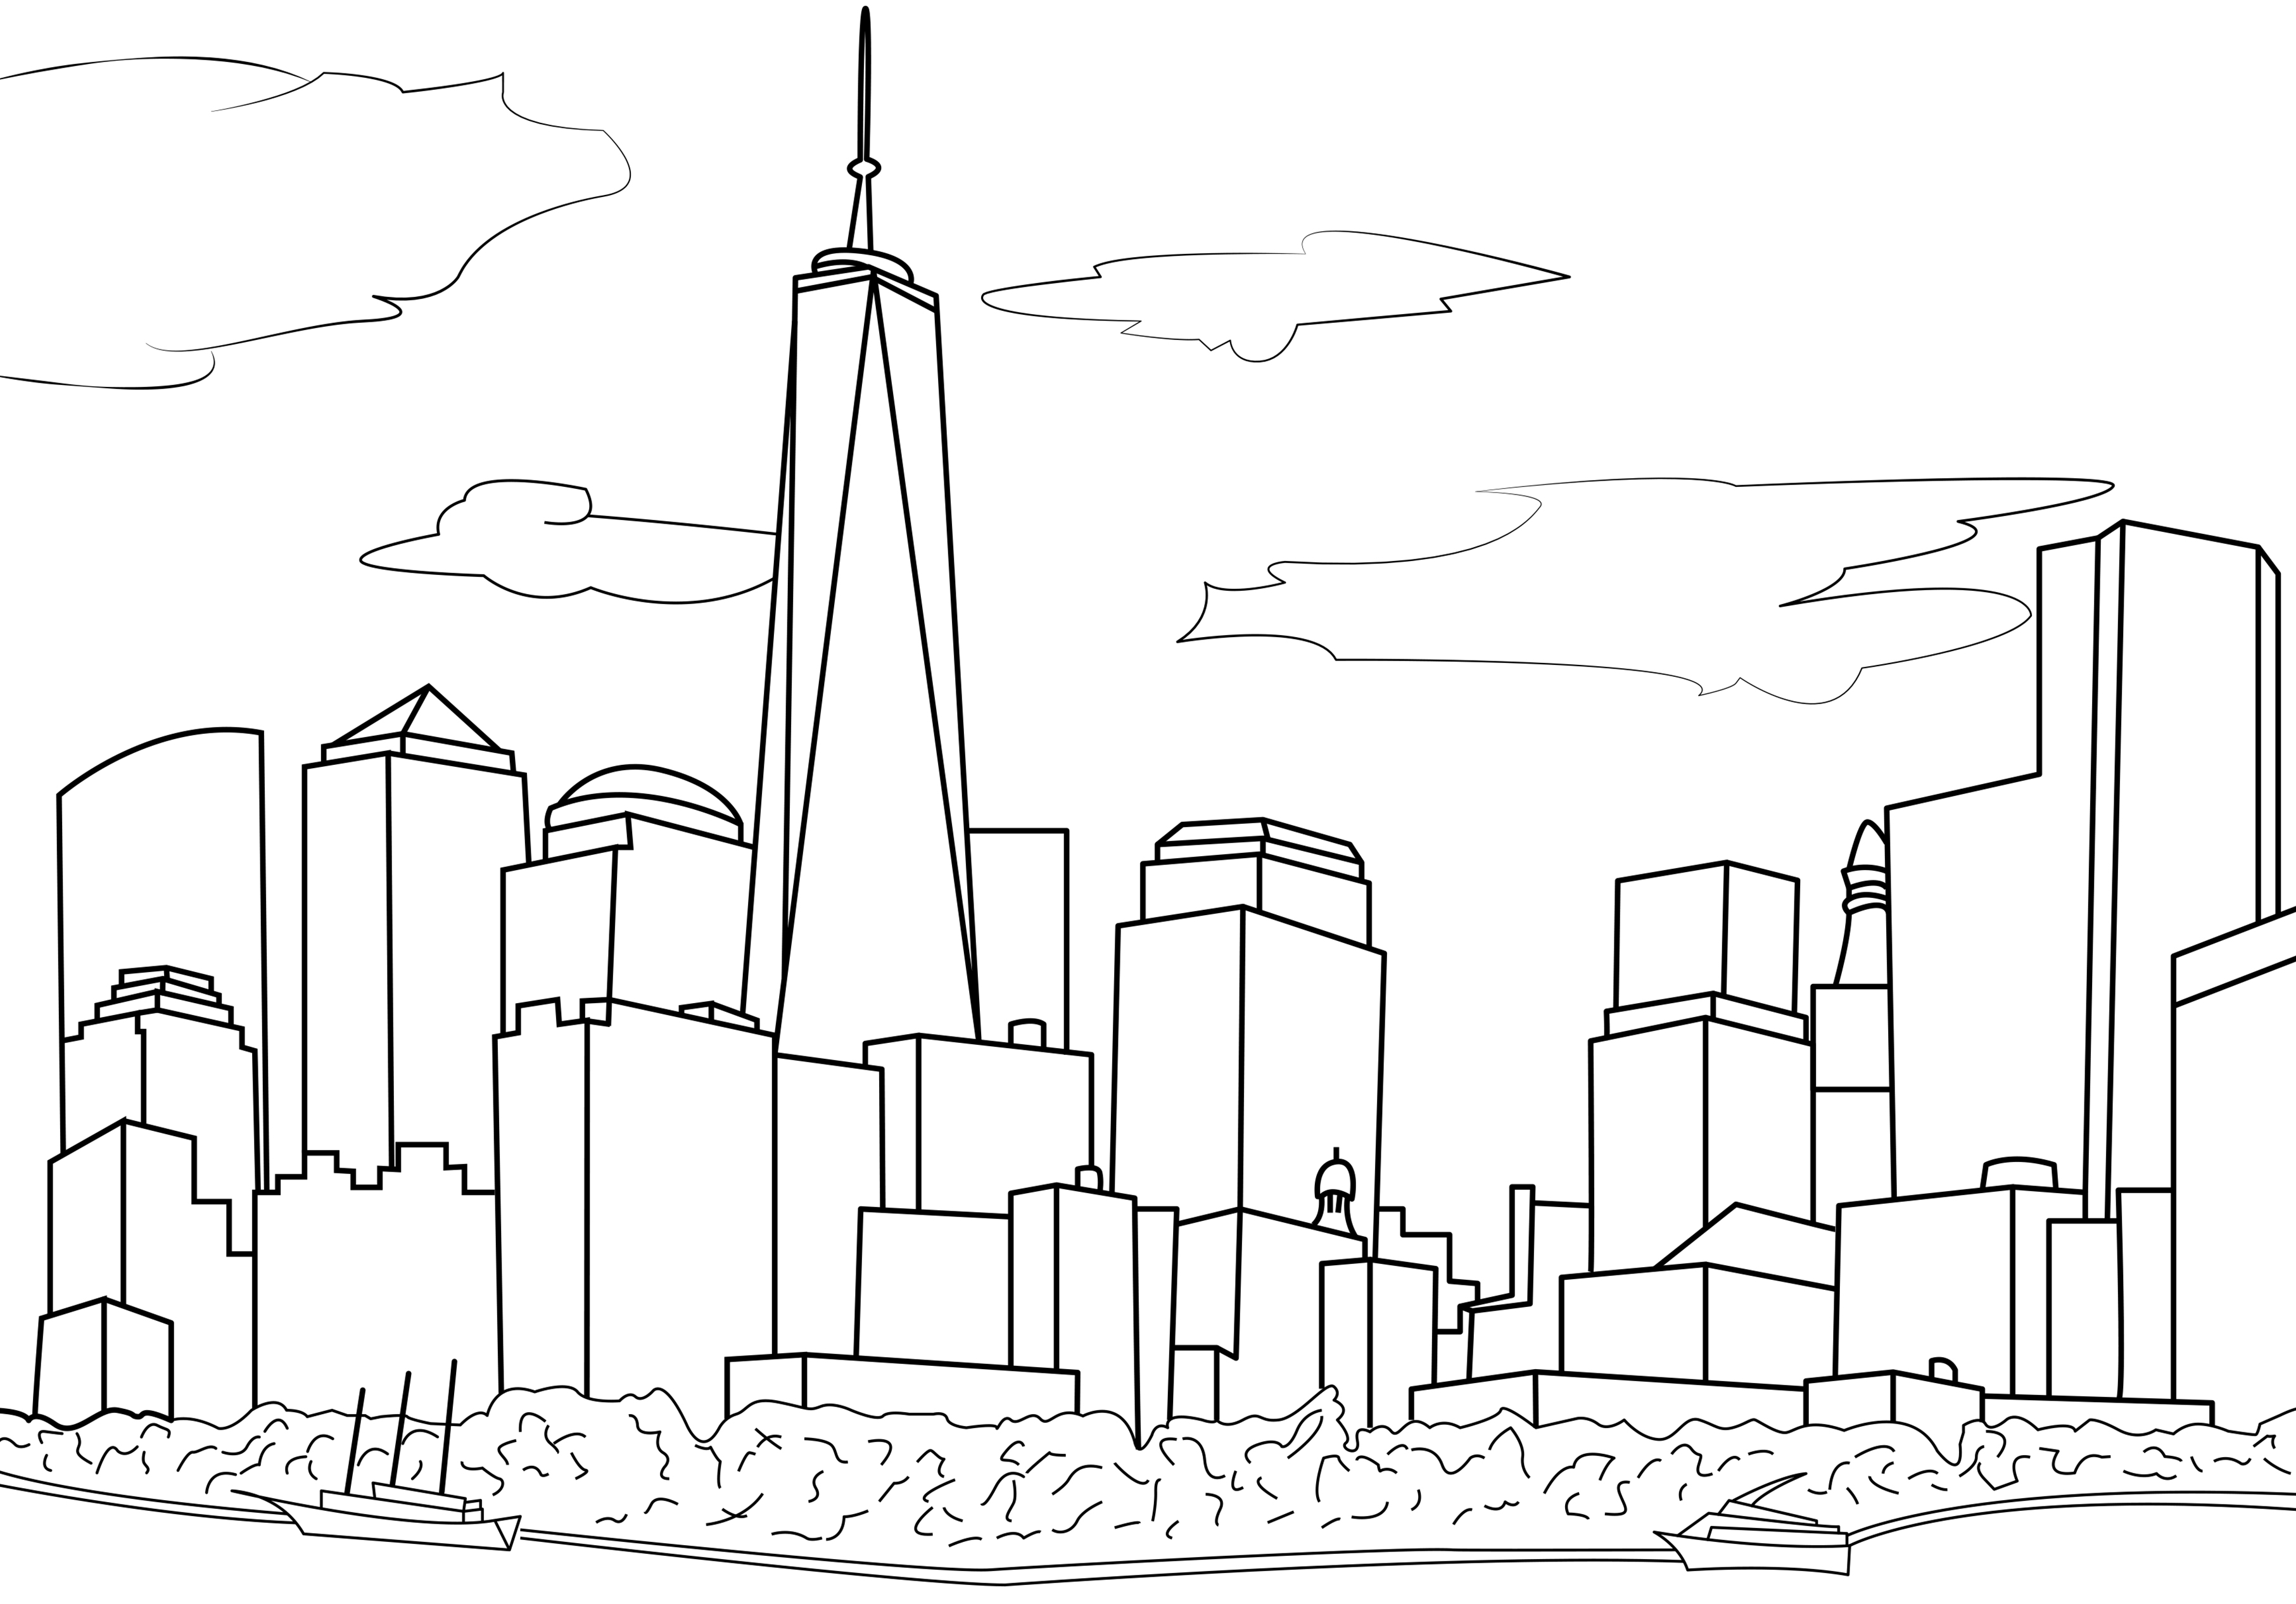 Semplice disegno che rappresenta lo skyline di New York. Lo skyline di New York è iconico e riconoscibile in tutto il mondo. Presenta molti grattacieli famosi come l'Empire State Building, il Chrysler Building e il One World Trade Center. In questo disegno, possiamo vedere solo il One World Trade Center, mentre gli altri edifici sono fittizi.